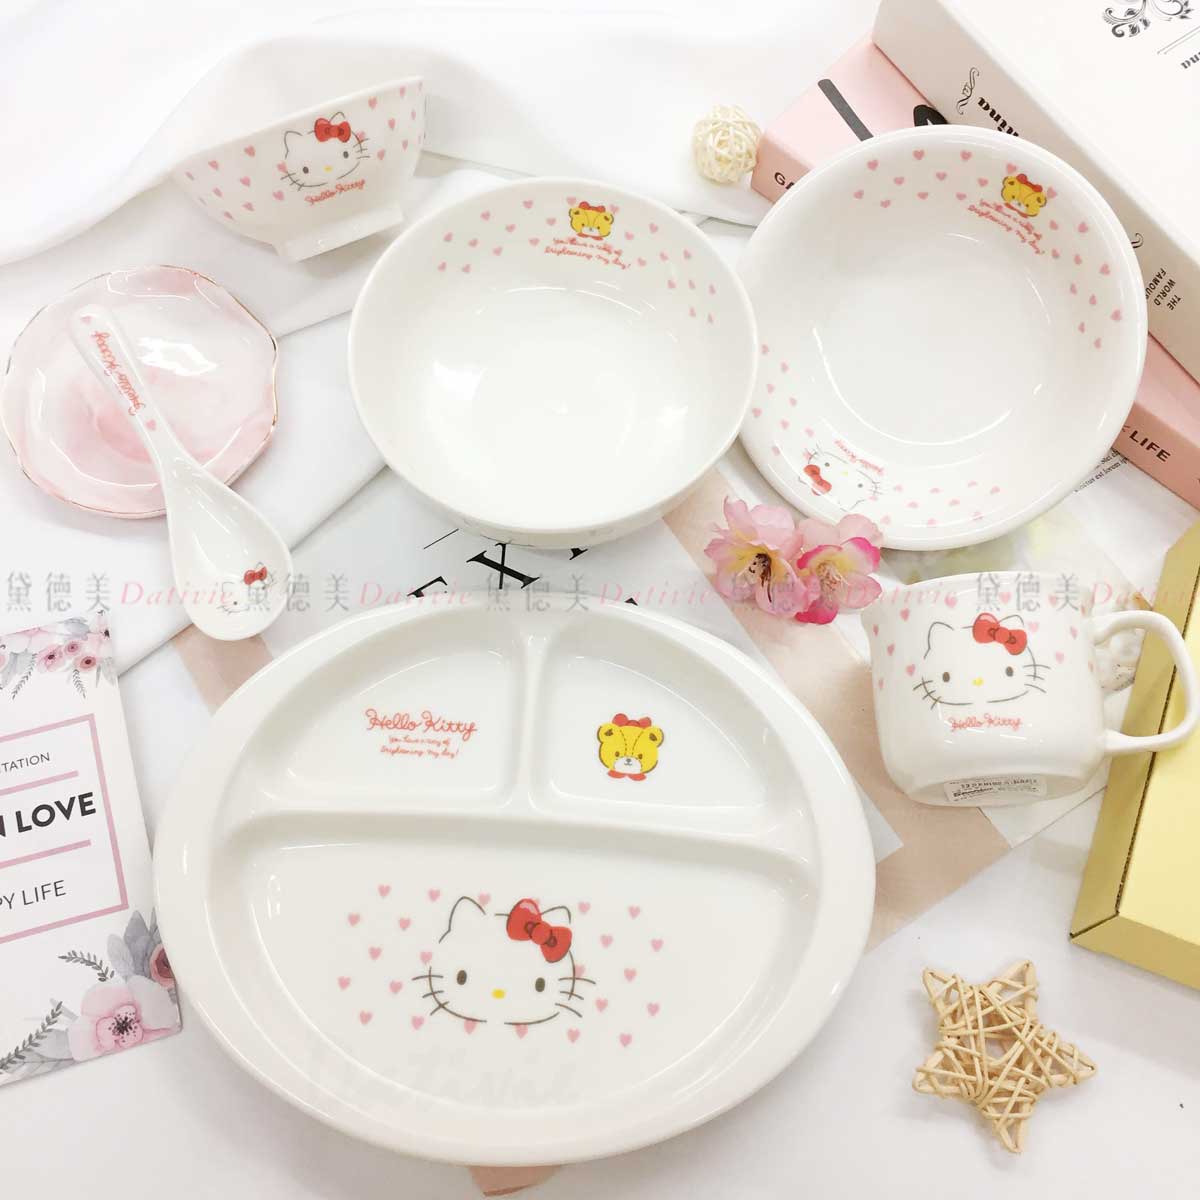 愛心陶瓷餐具系列-Hello Kitty 三麗鷗 Sanrio 金正陶器 日本進口正版授權